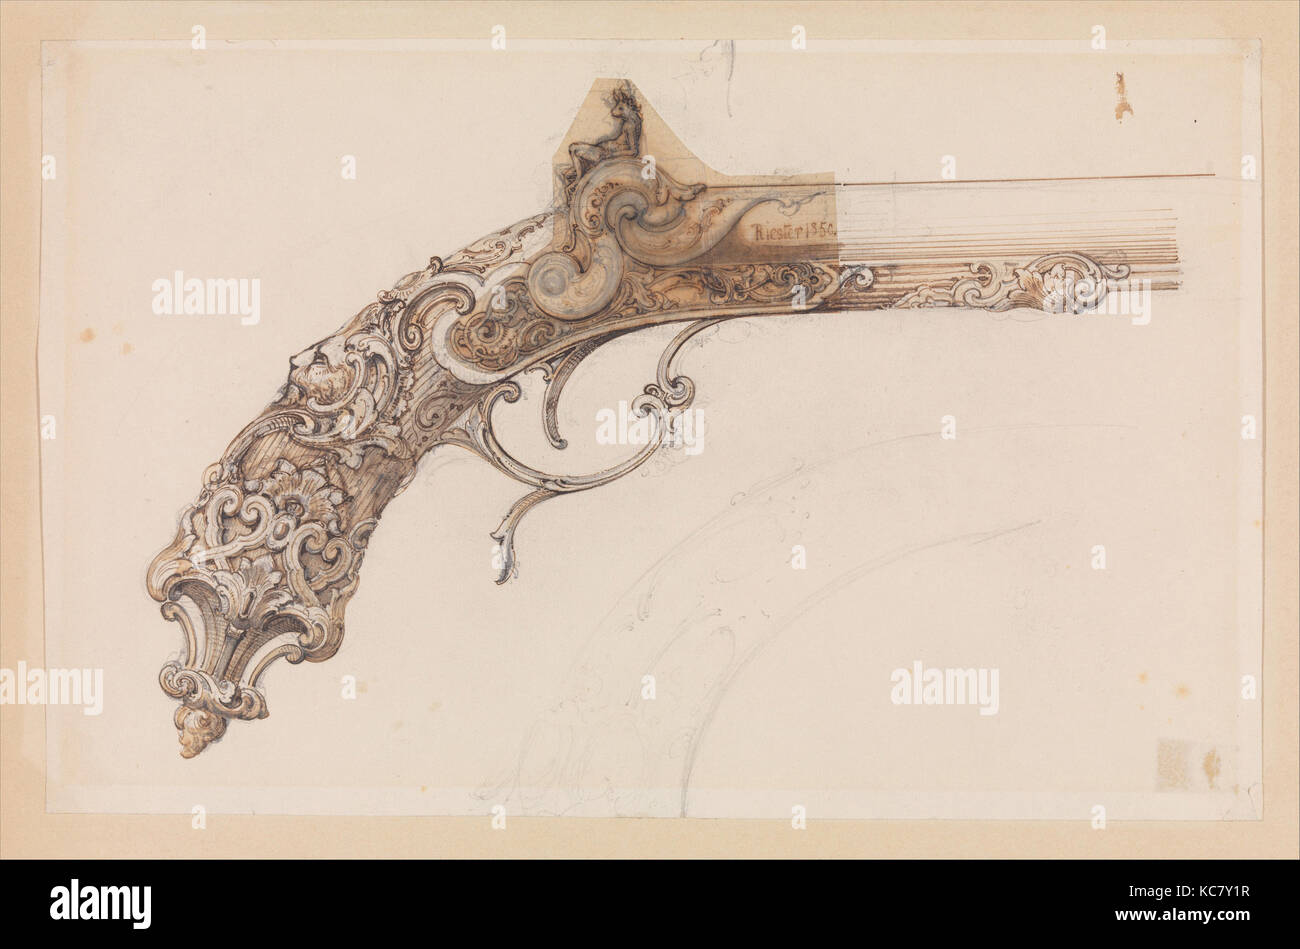 Conception pour un pistolet à percussion, Martin Riester, daté 1850 Banque D'Images